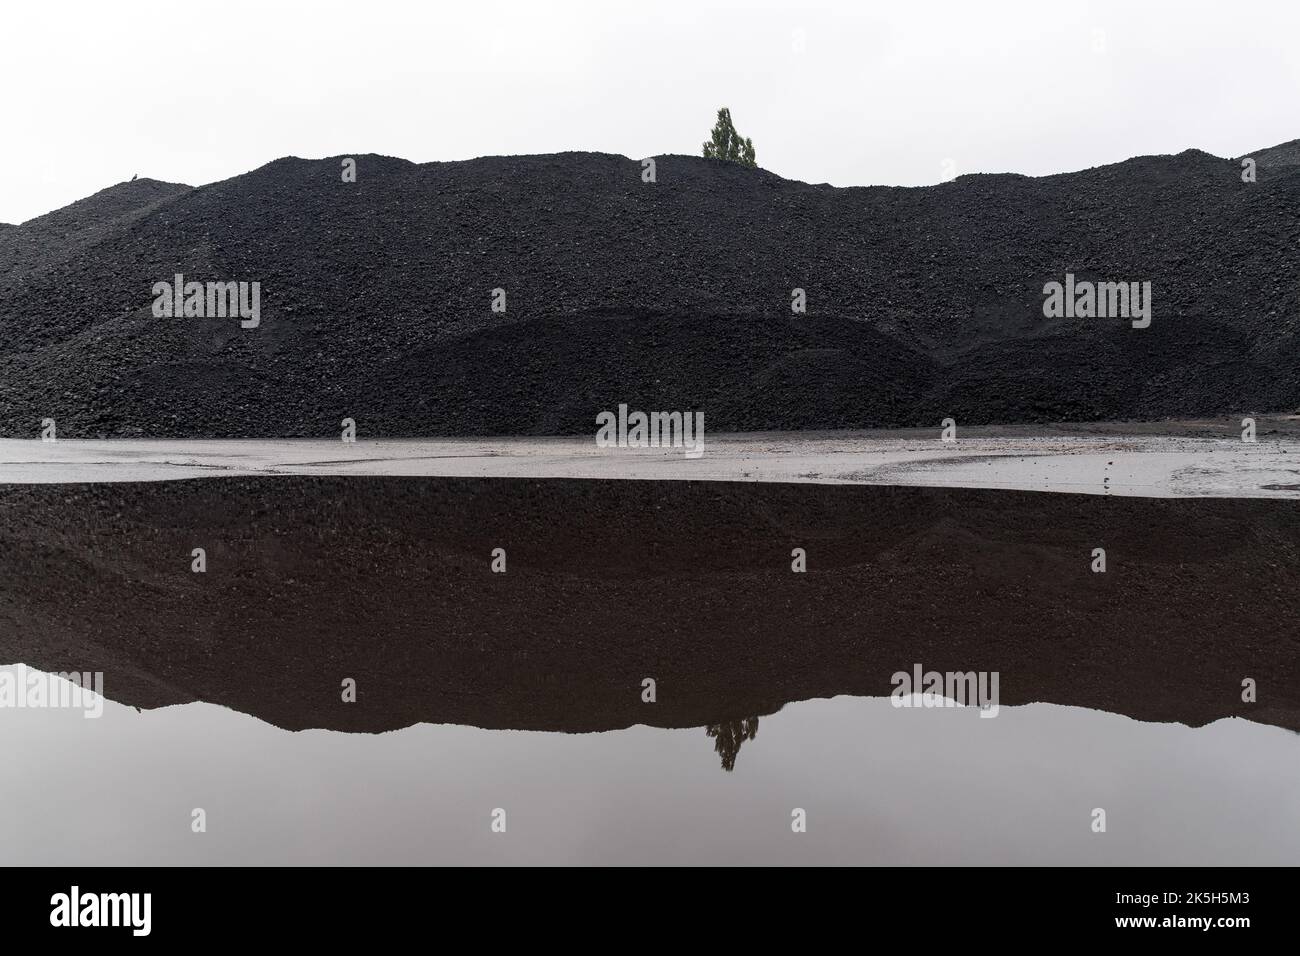 Imported coal in Port of Gdansk, Poland © Wojciech Strozyk / Alamy Stock Photo Stock Photo